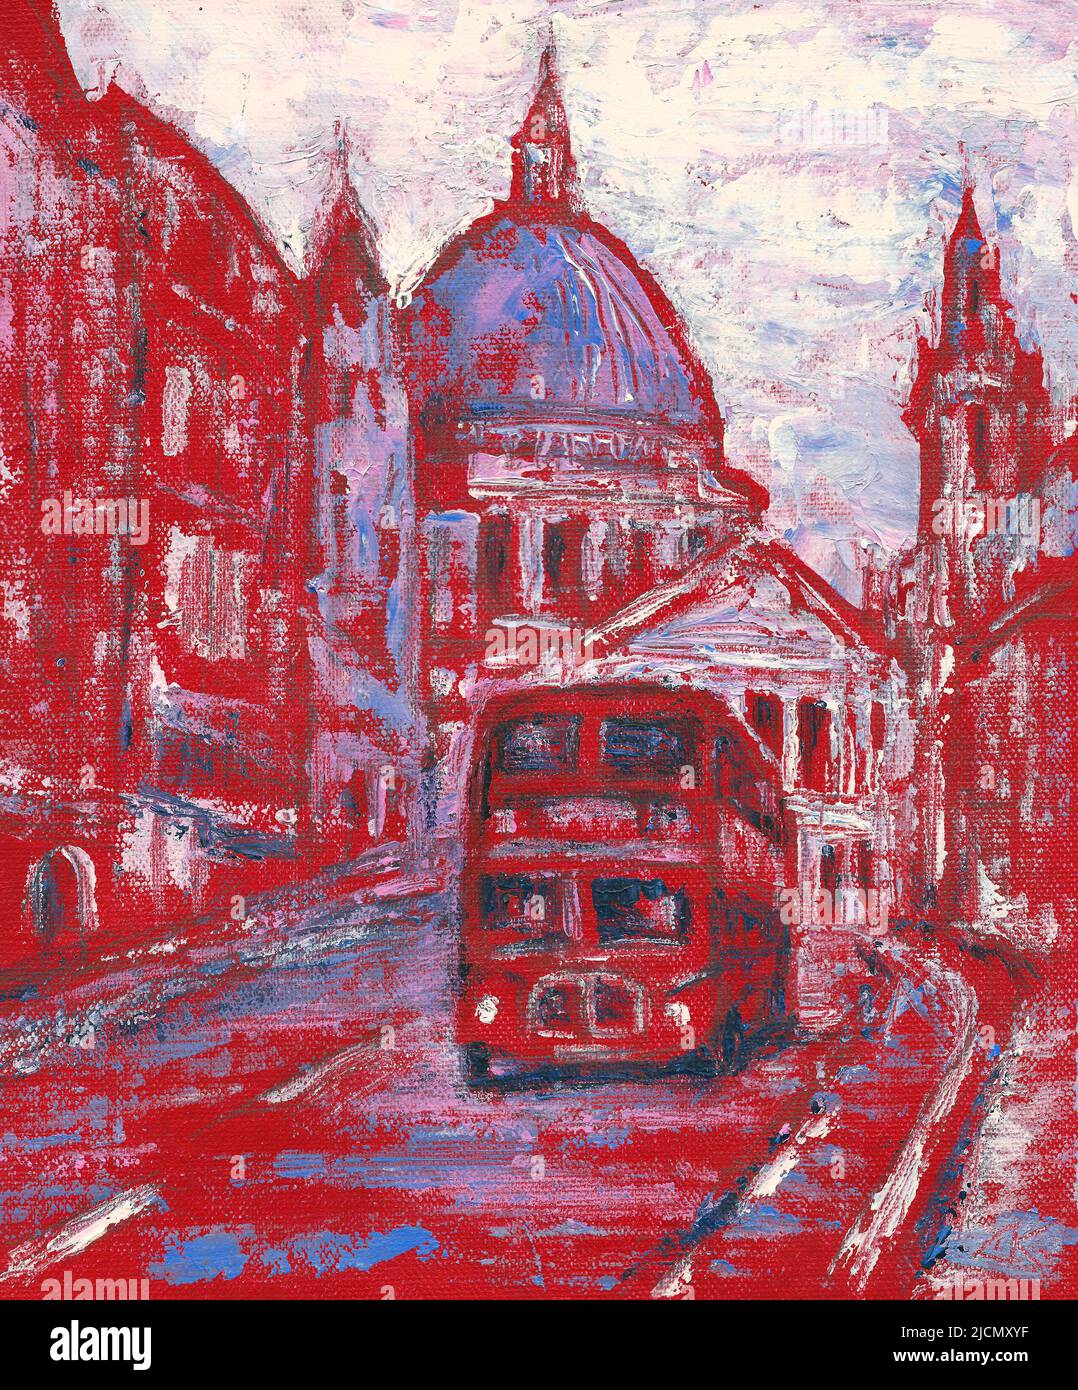 Red bus dans la rue derrière la cathédrale St Paul à Londres, peinture d'art en Angleterre Banque D'Images